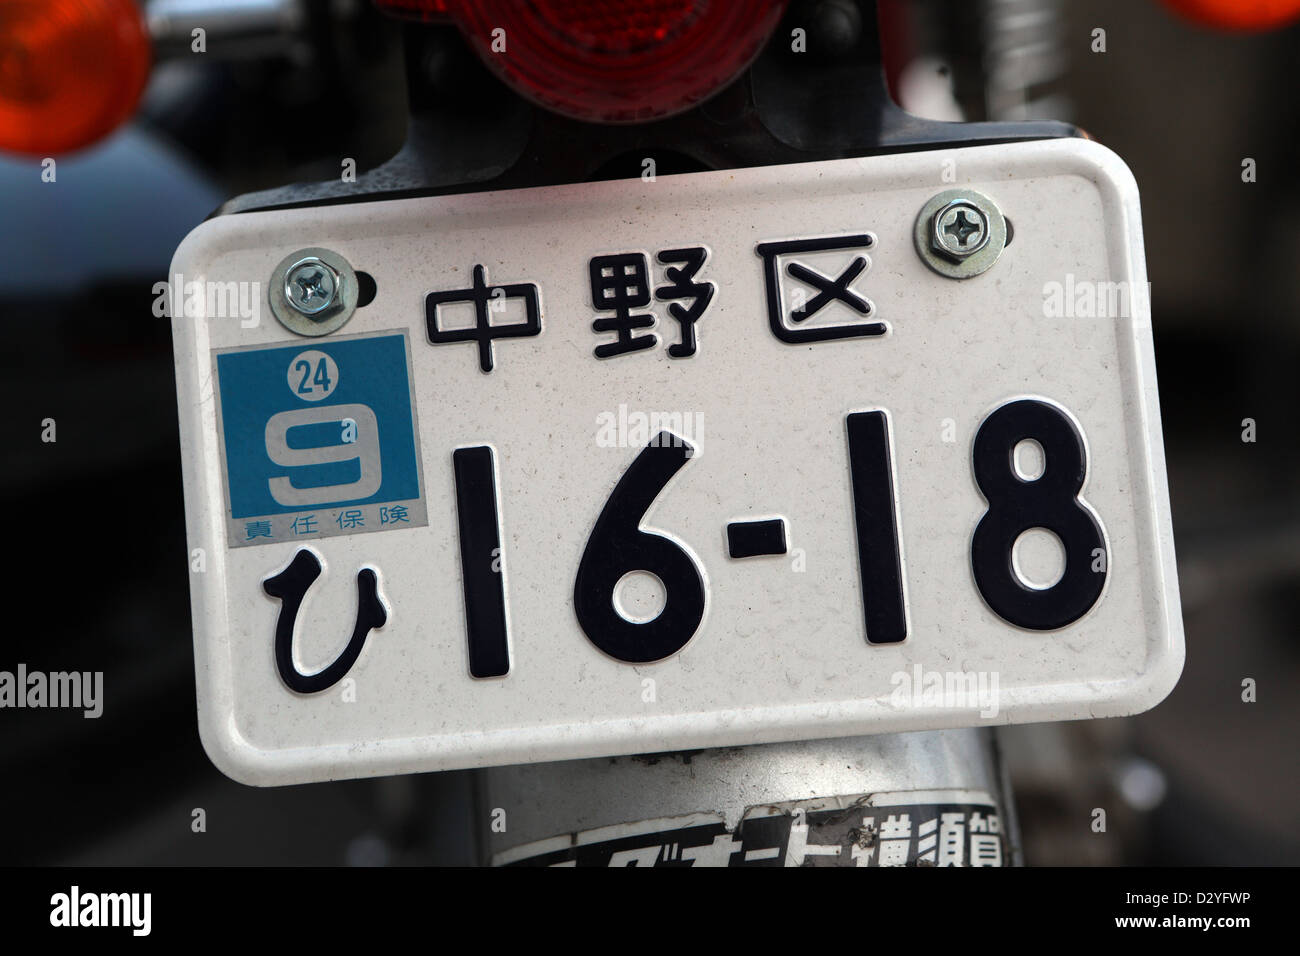 https://c8.alamy.com/compde/d2yfwp/tokio-japan-das-nummernschild-auf-einem-motorrad-d2yfwp.jpg